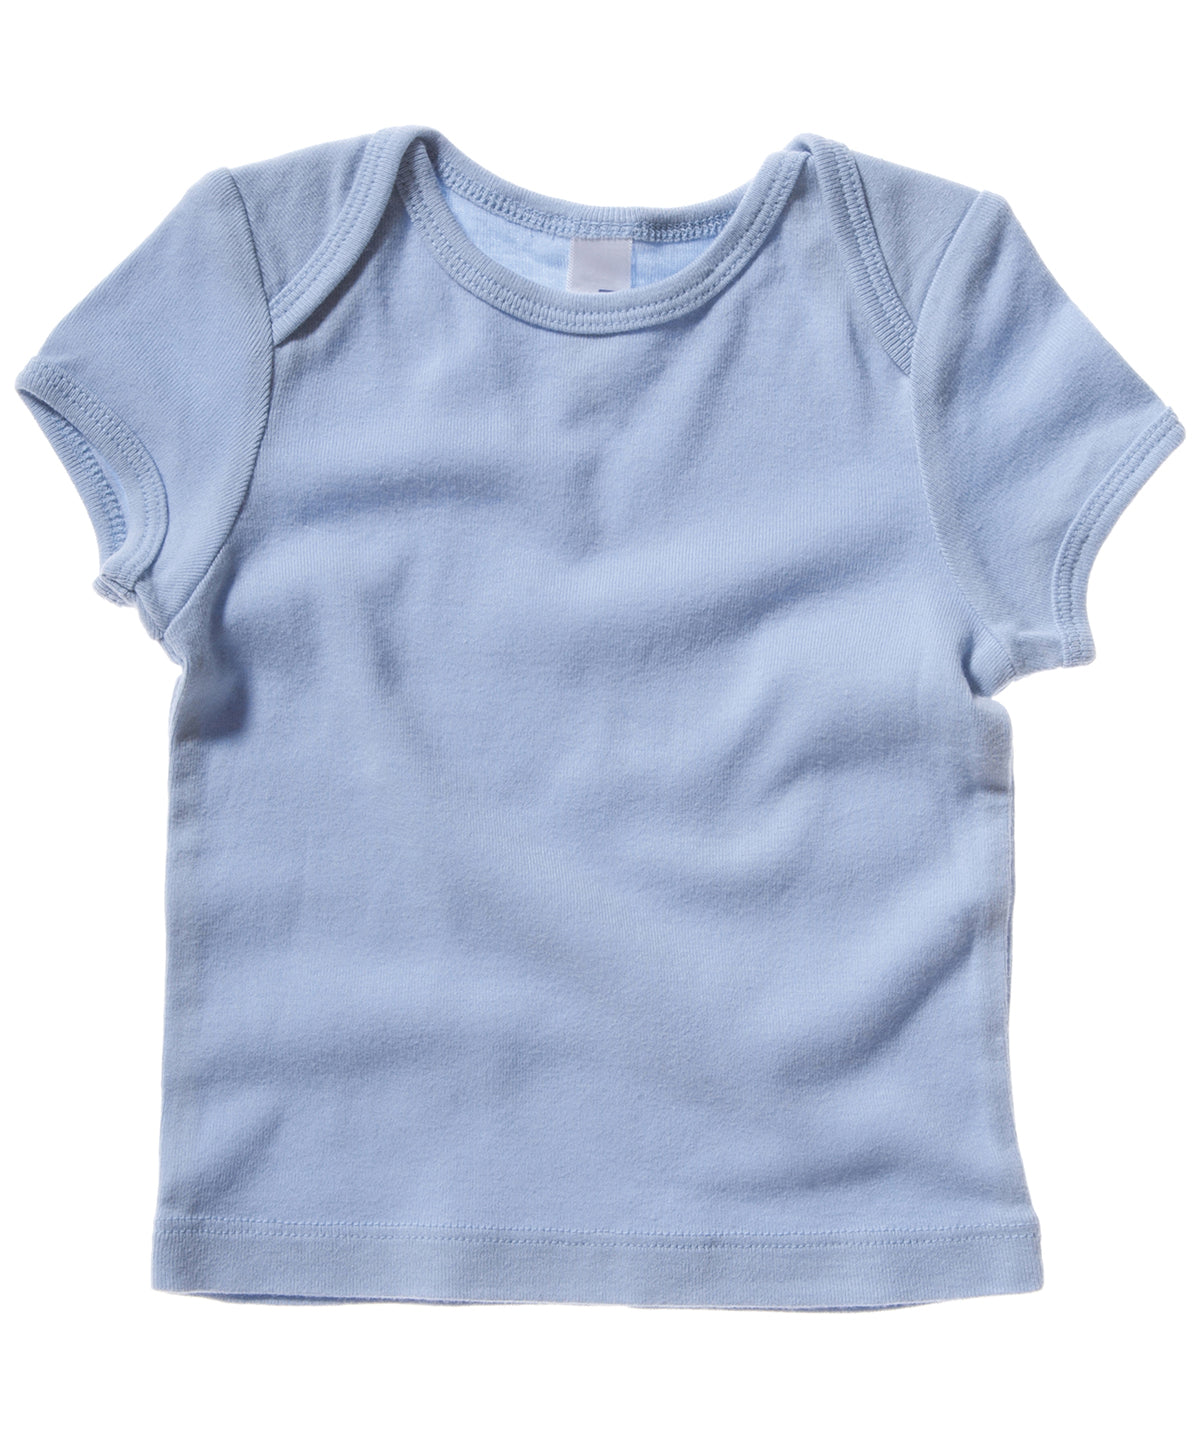 Stuttermabolir - Short Sleeve Baby Rib T-shirt